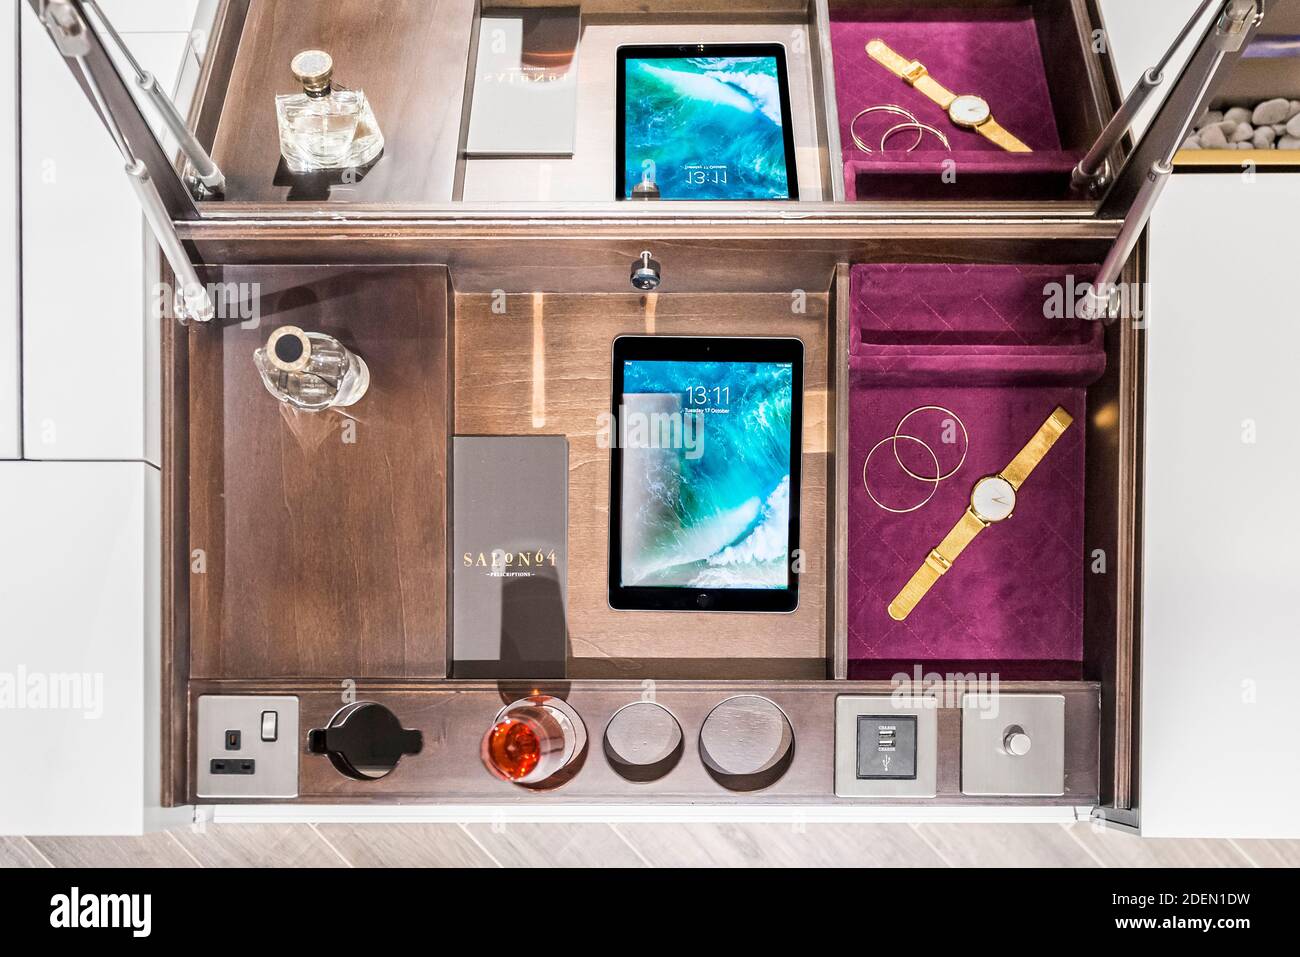 Particolare della scatola di gioielli su misura realizzata in Corian. Salon 64, Londra, Regno Unito. Architetto: Jak Studio, 2020. Foto Stock